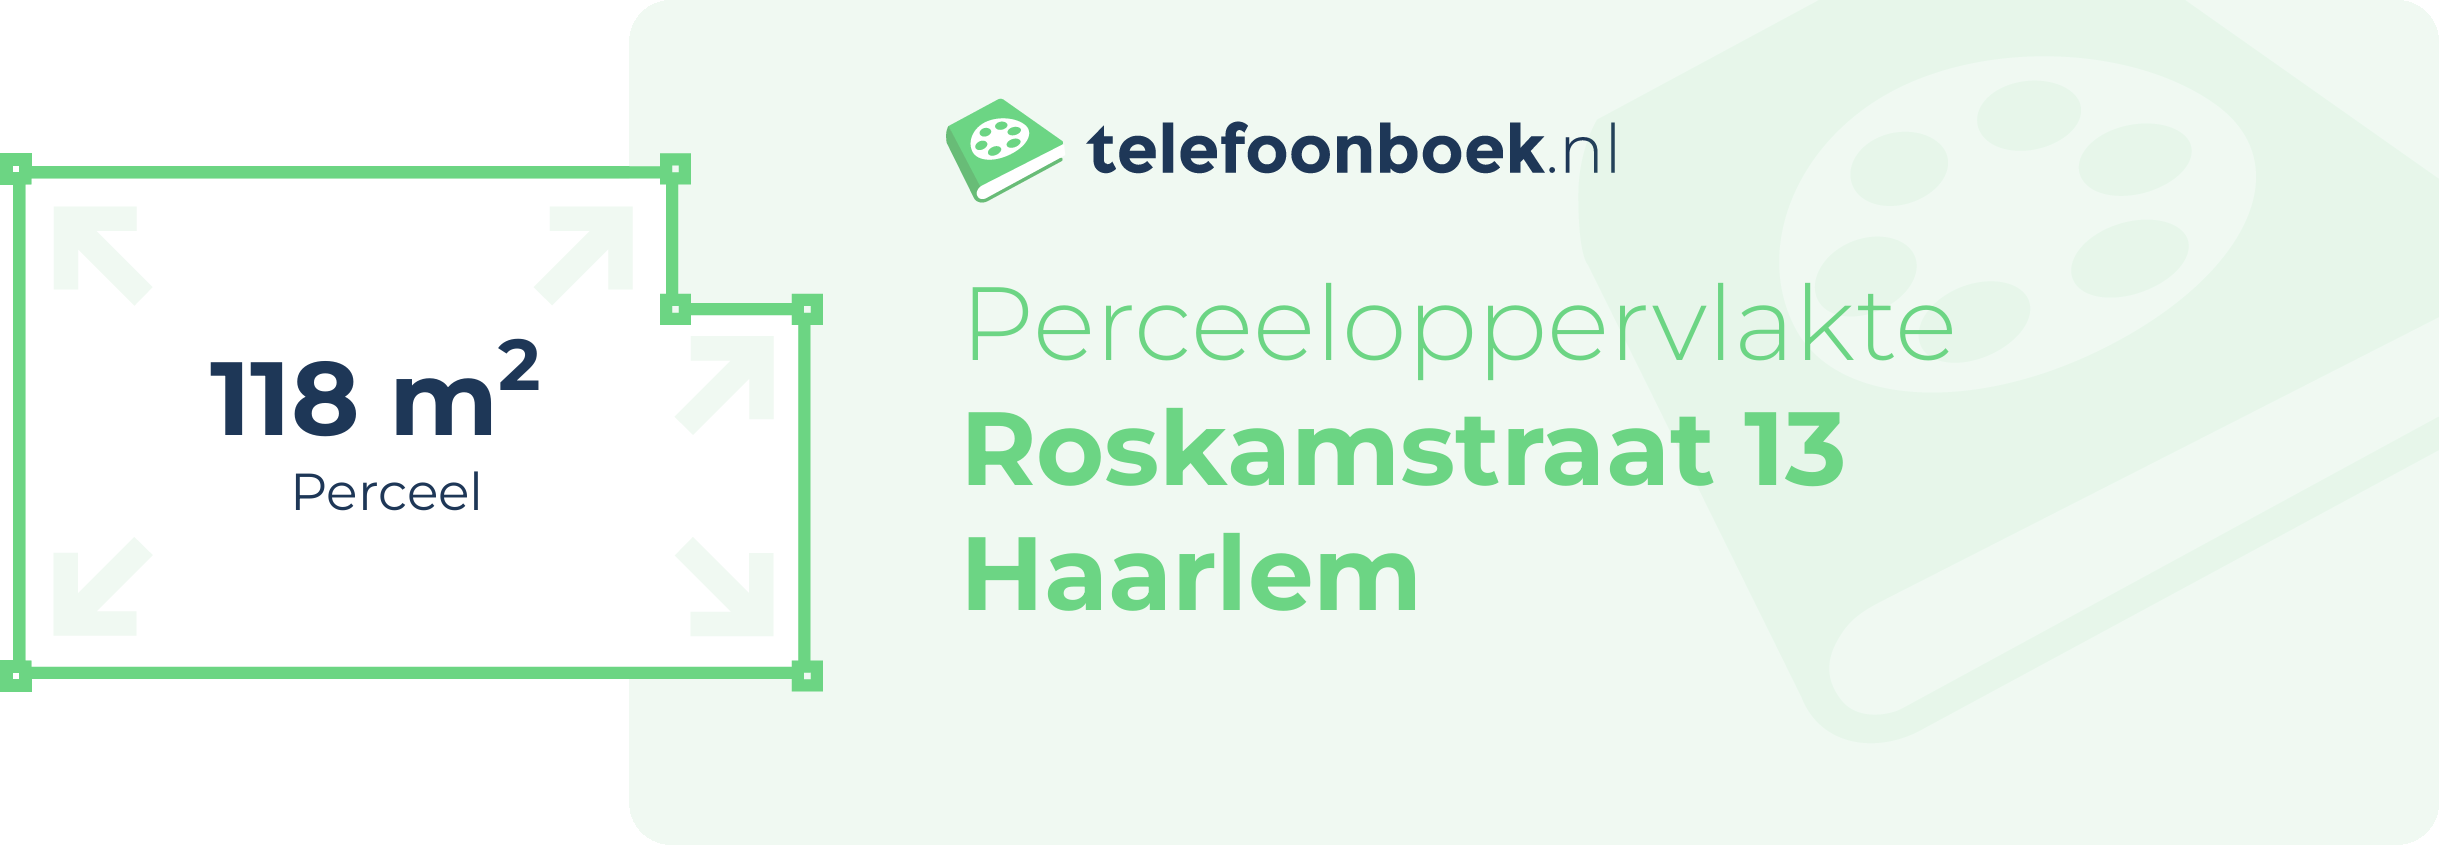 Perceeloppervlakte Roskamstraat 13 Haarlem